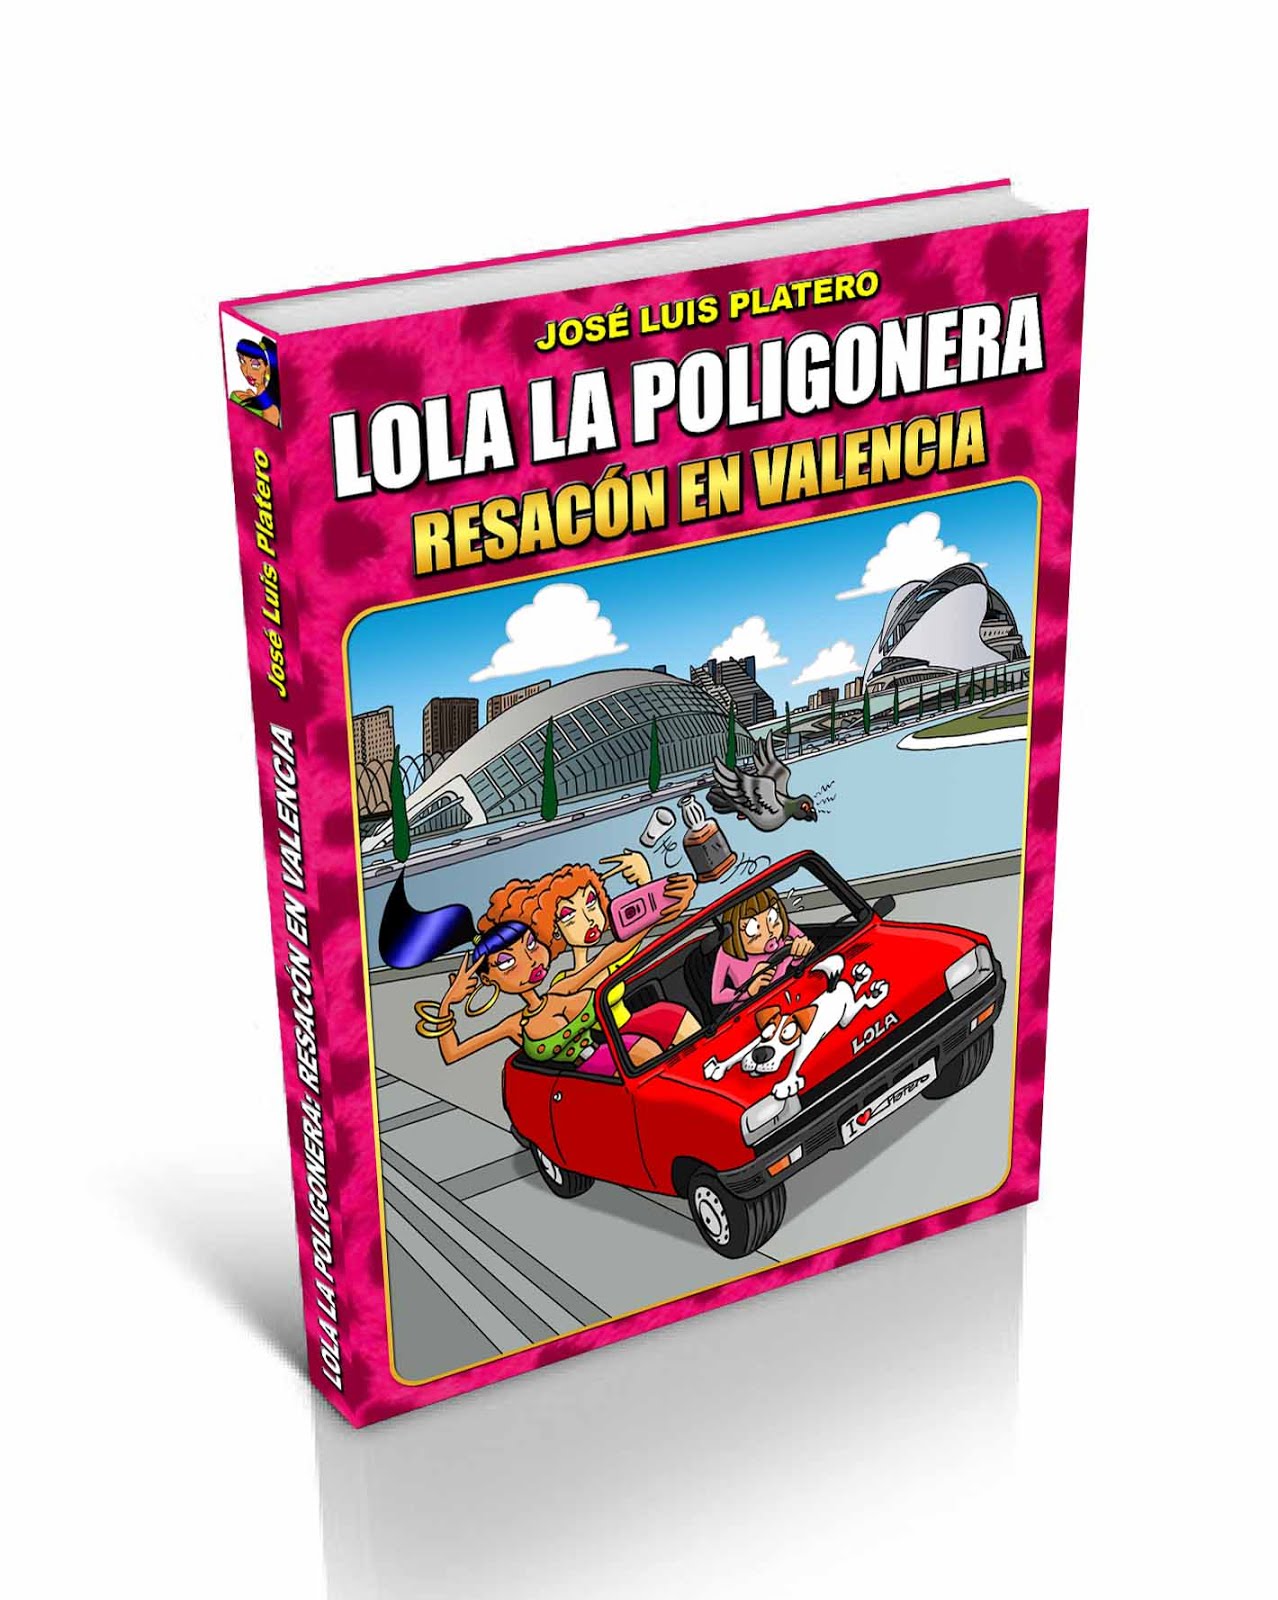 "LOLA LA POLIGONERA: RESACÓN EN VALENCIA" ¡YA A LA VENTA!